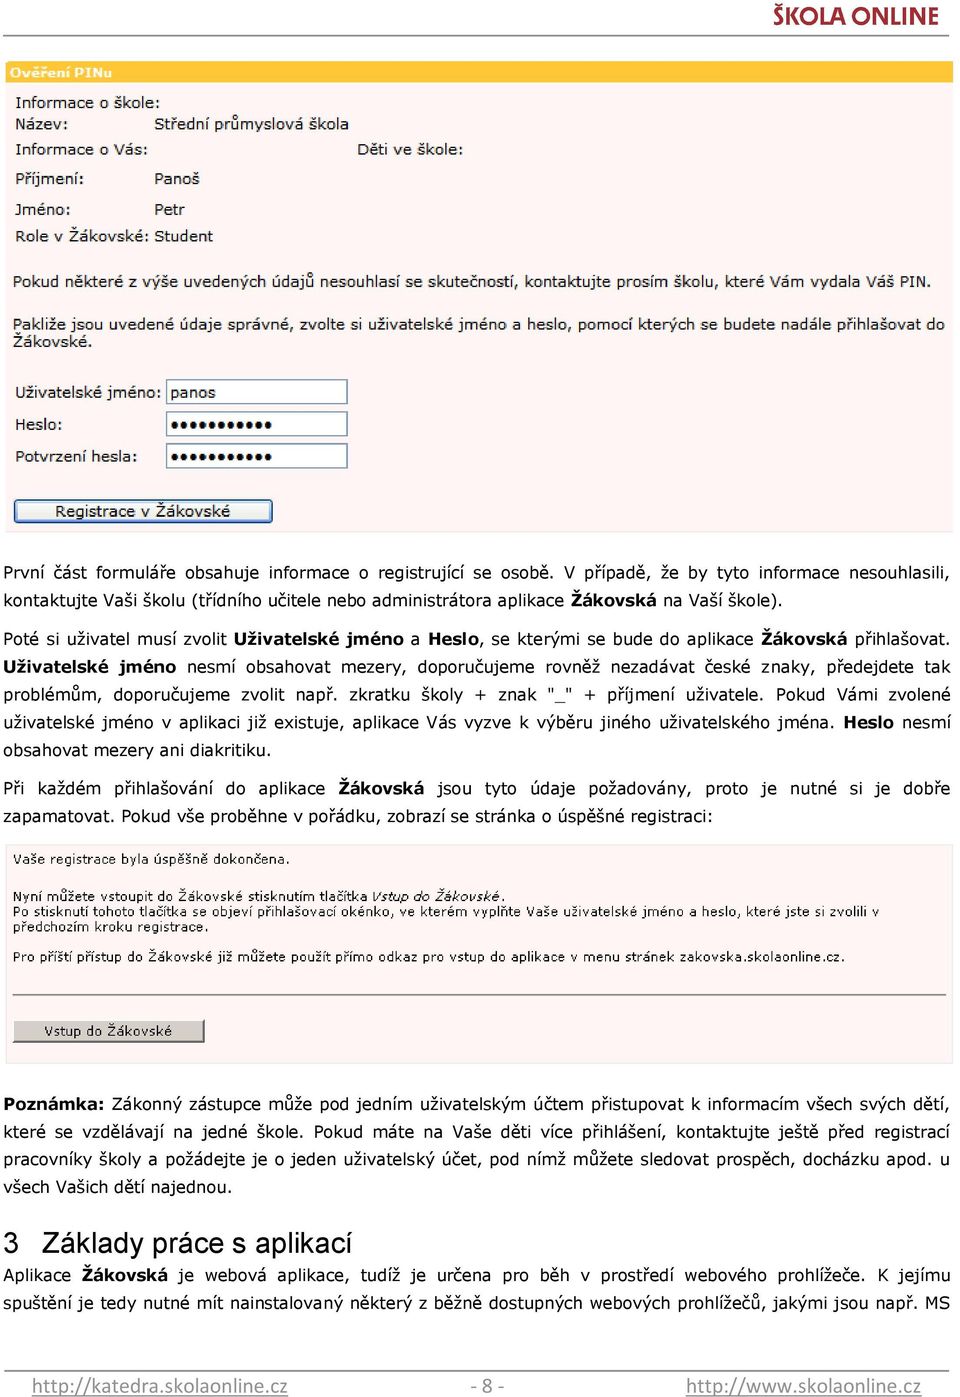 Poté si uţivatel musí zvolit Uţivatelské jméno a Heslo, se kterými se bude do aplikace Ţákovská přihlašovat.